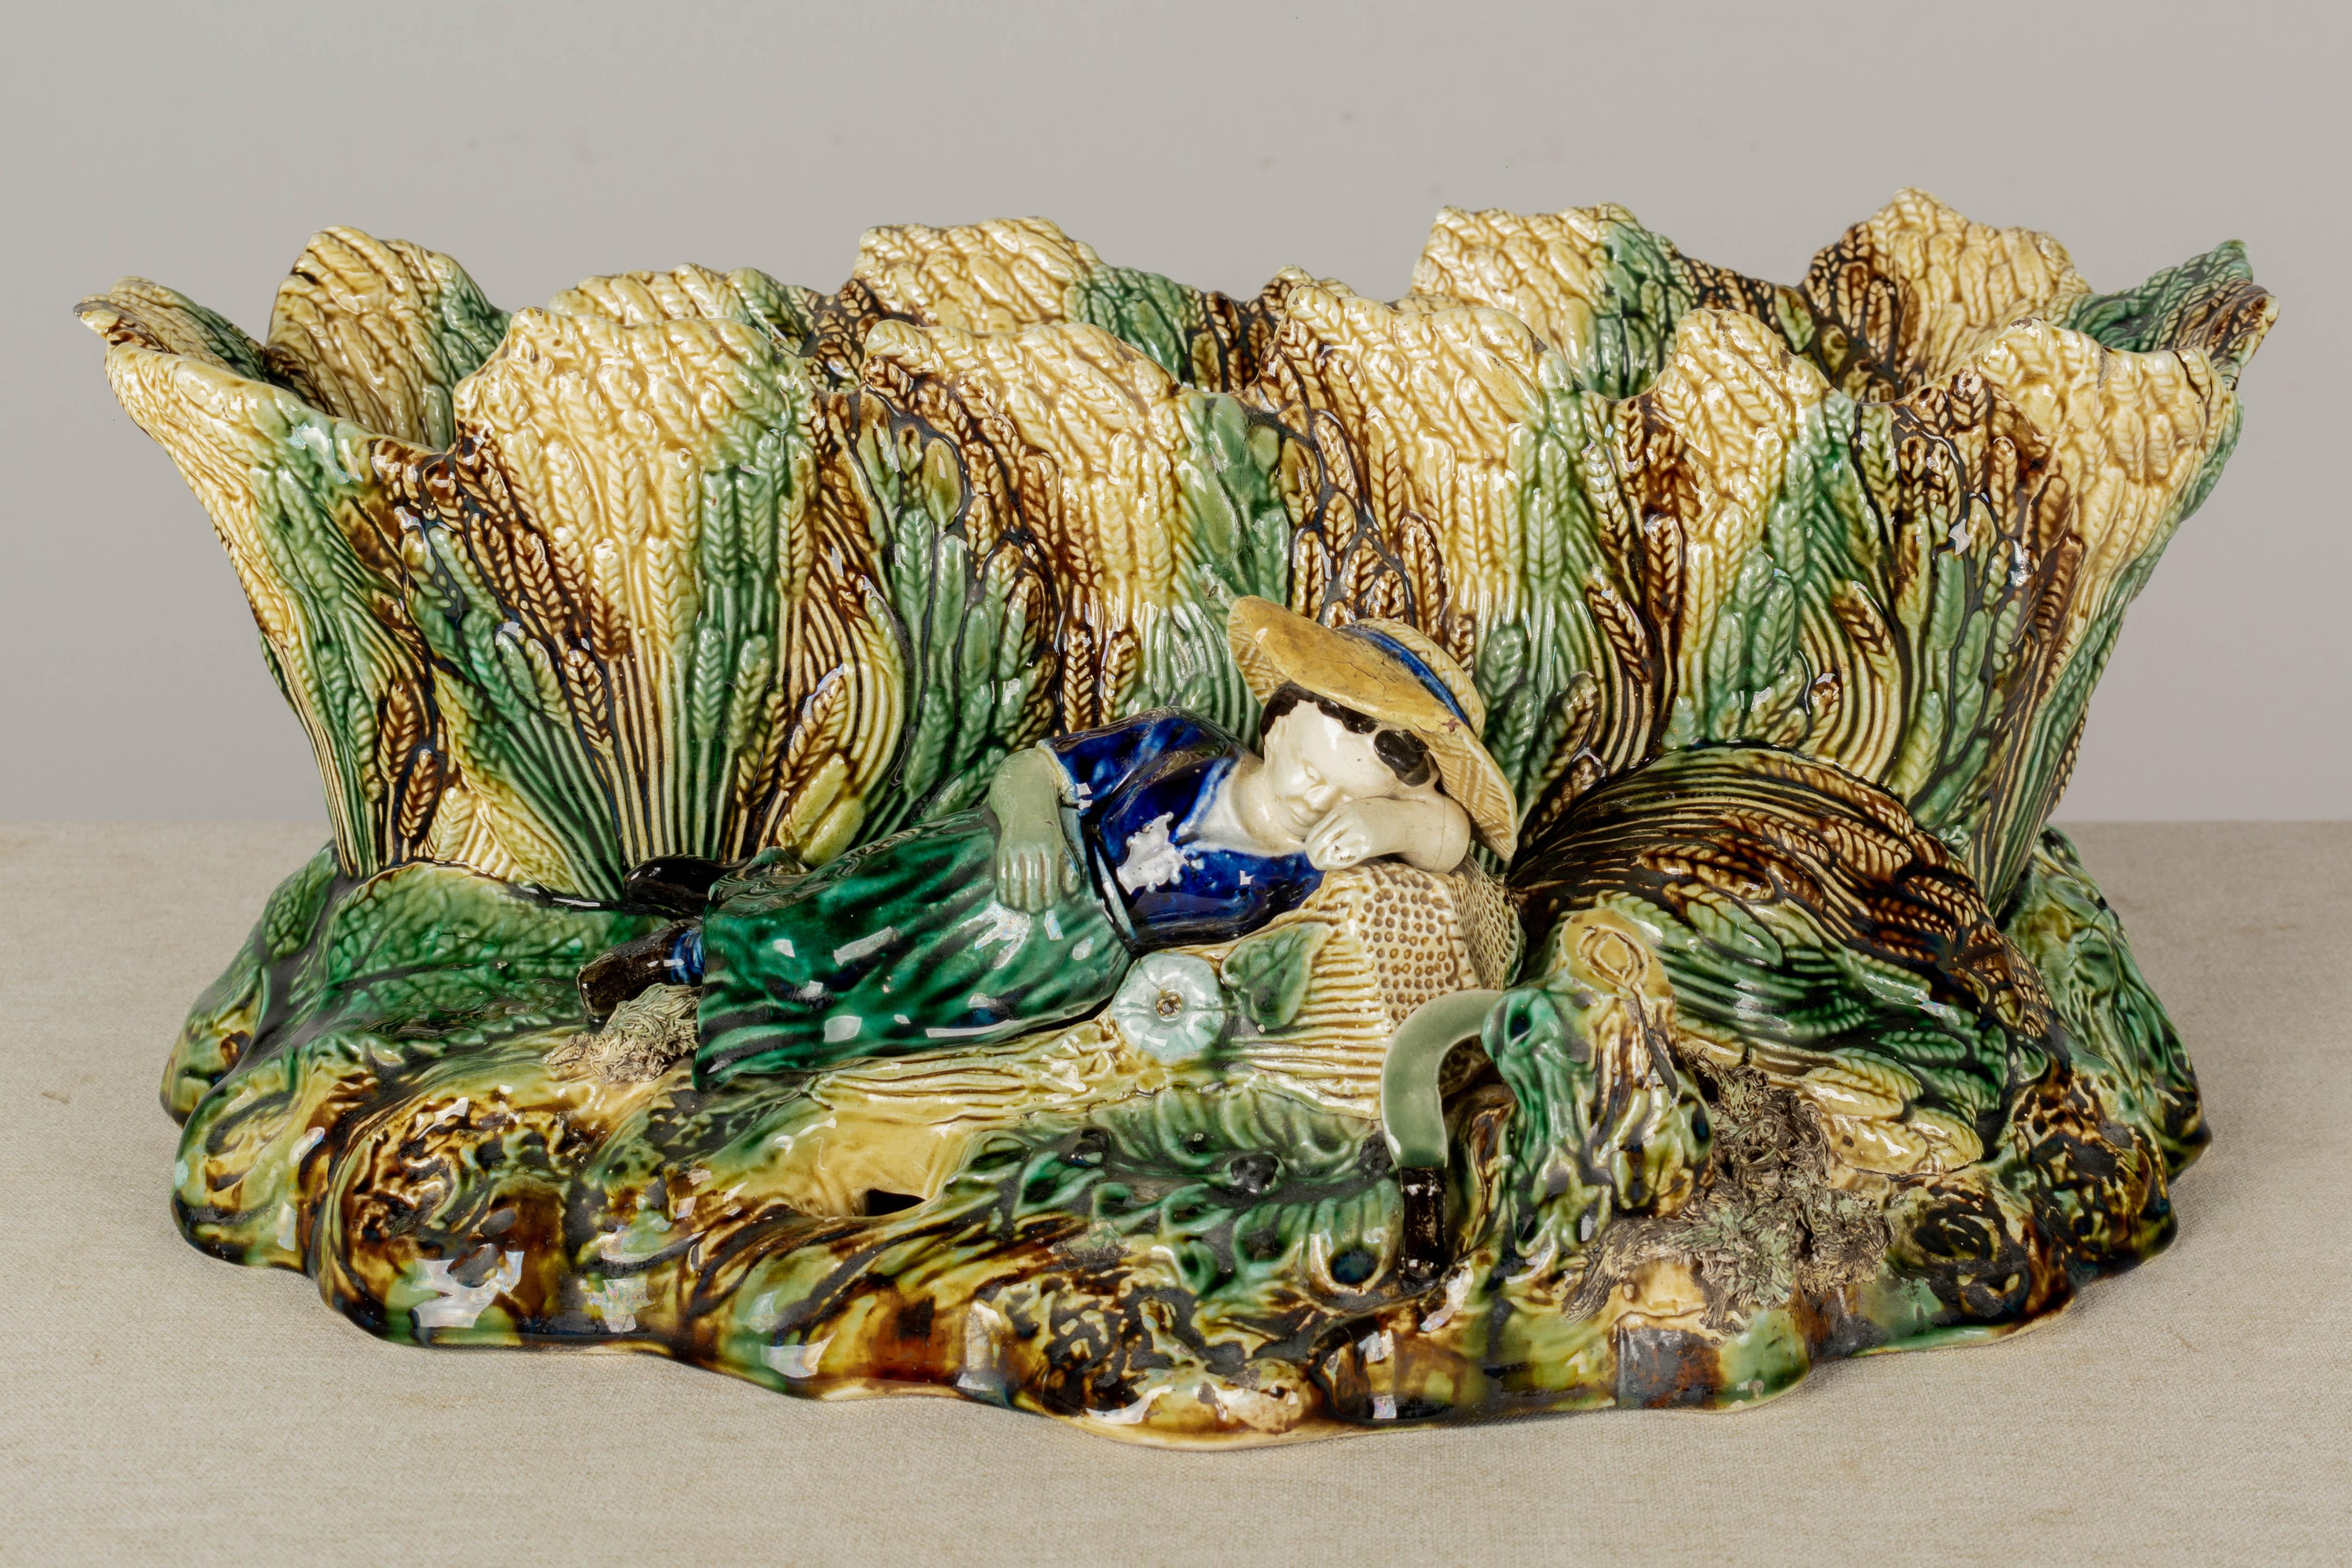 Eine große englische Majolika glasierte Keramik jardinière, oder Pflanzer, längliche Form, die eine schlafende Jungfrau in einem Feld von Weizen darstellt. Lebendig gefärbte Glasur in Grün, Braun, Ockergelb und Kobalt mit dunkelbrauner Innenseite.